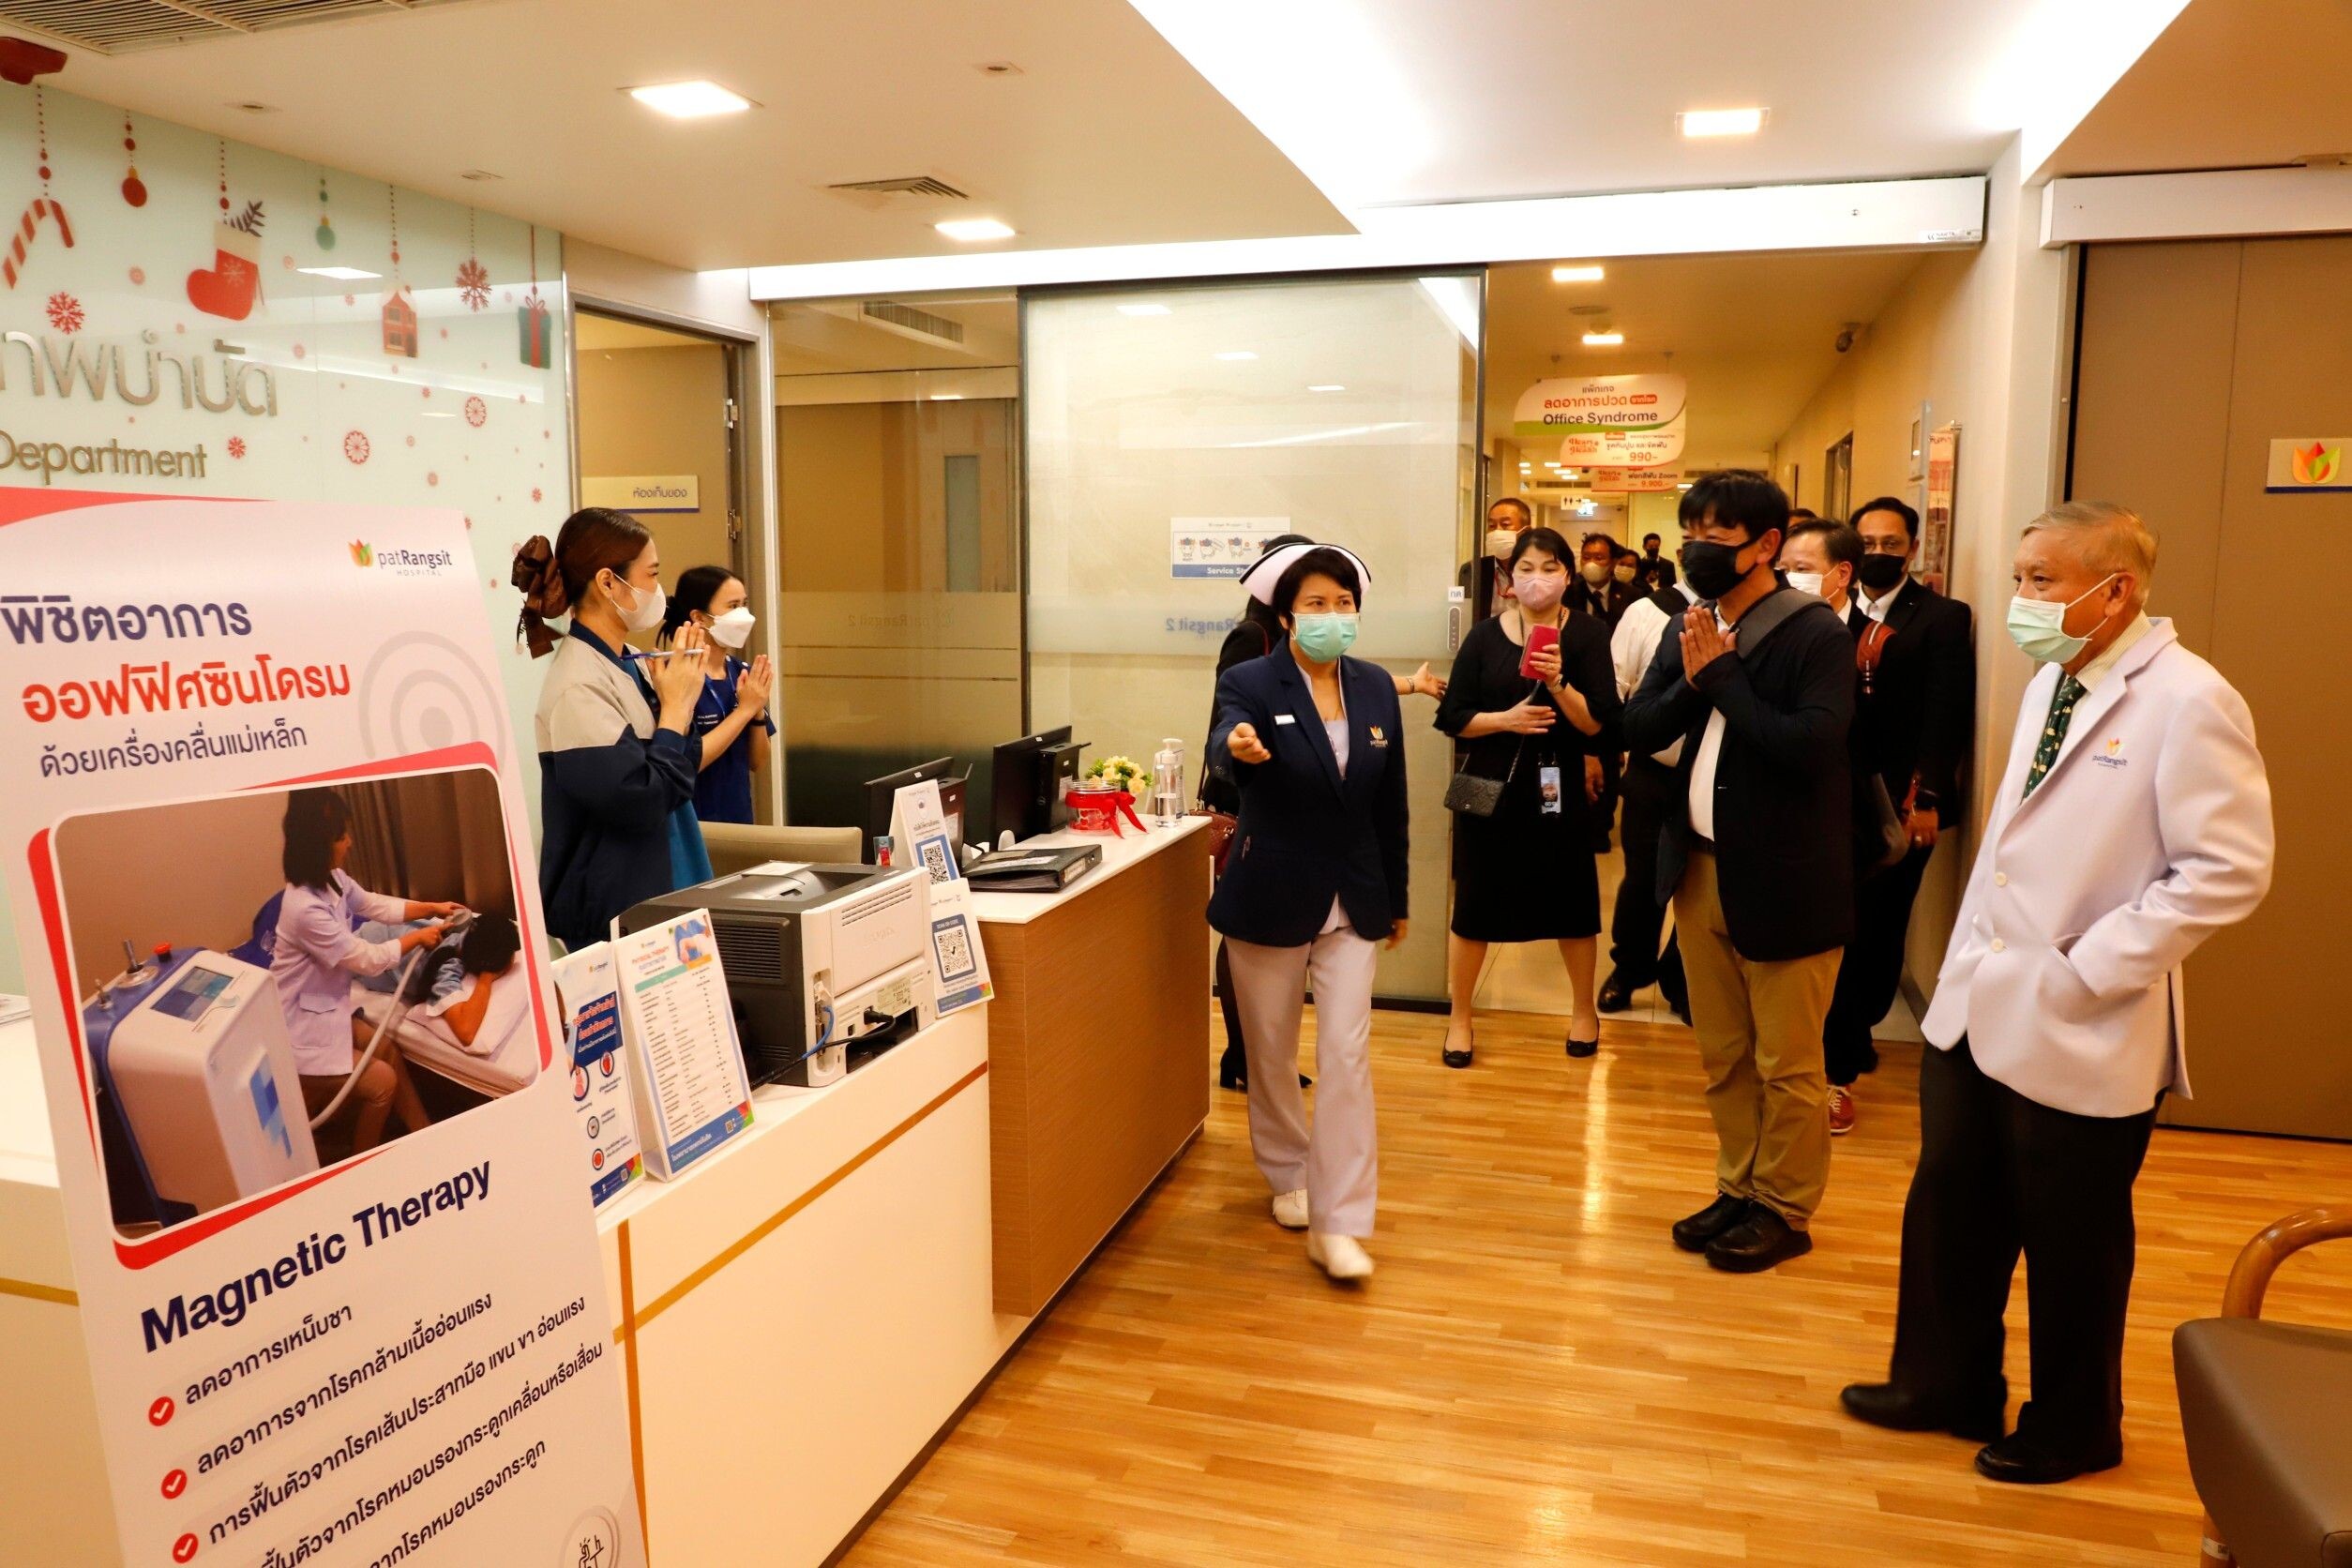 คณะผู้บริหารจากองค์กรทางด้าน Healthcare ประเทศญี่ปุ่นเข้าเยี่ยมชมการบริหารจัดการกิจการ กลุ่ม รพ.แพทย์รังสิต